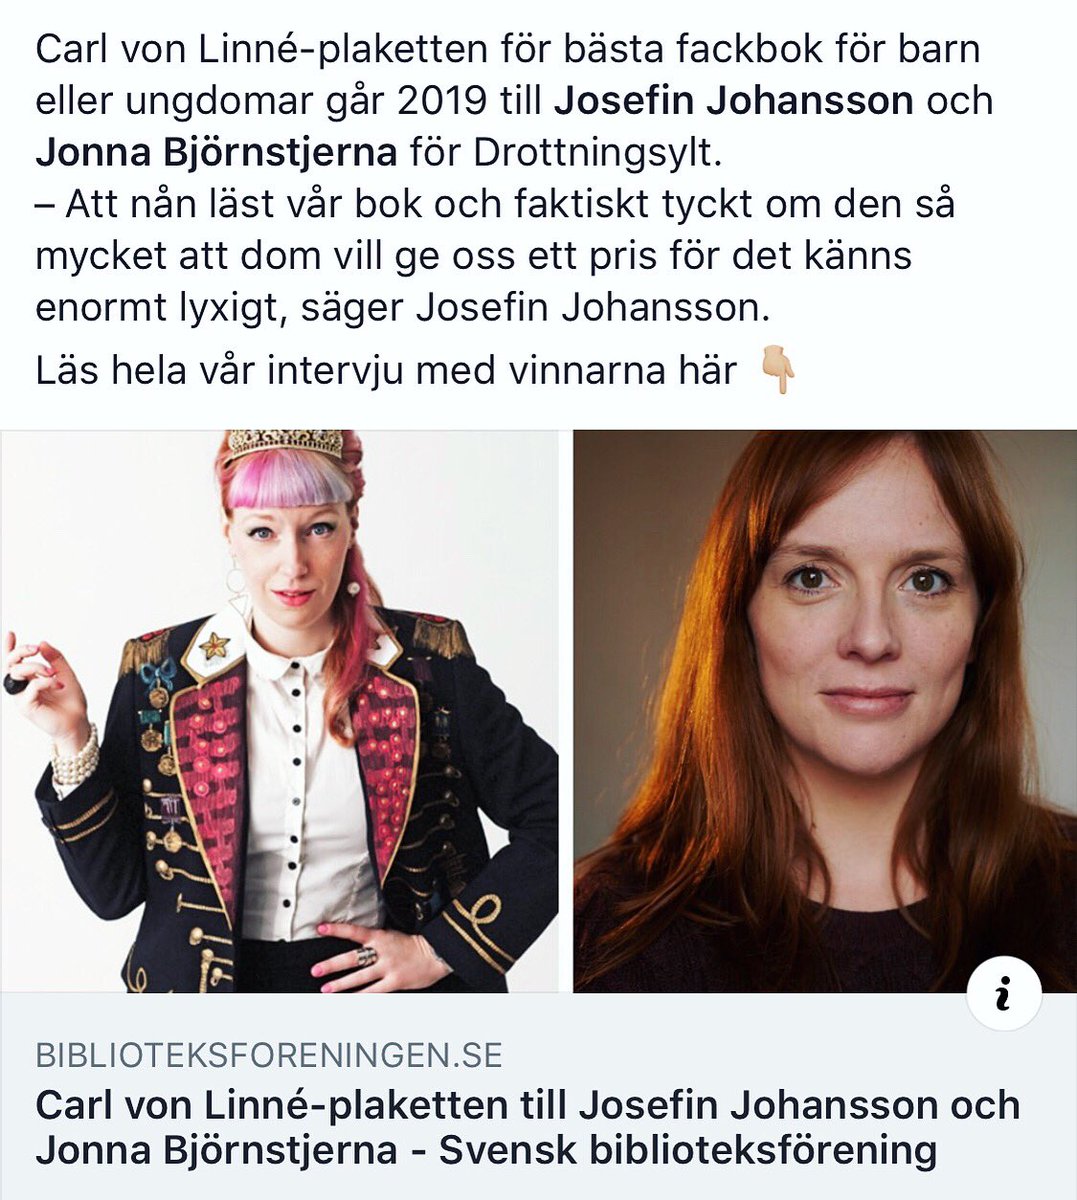 Drottningsyltboken HAR VUNNIT PRIS?!? Tack söta Svensk biblioteksförening och yes asså för Jonna, mig och Mondial! 